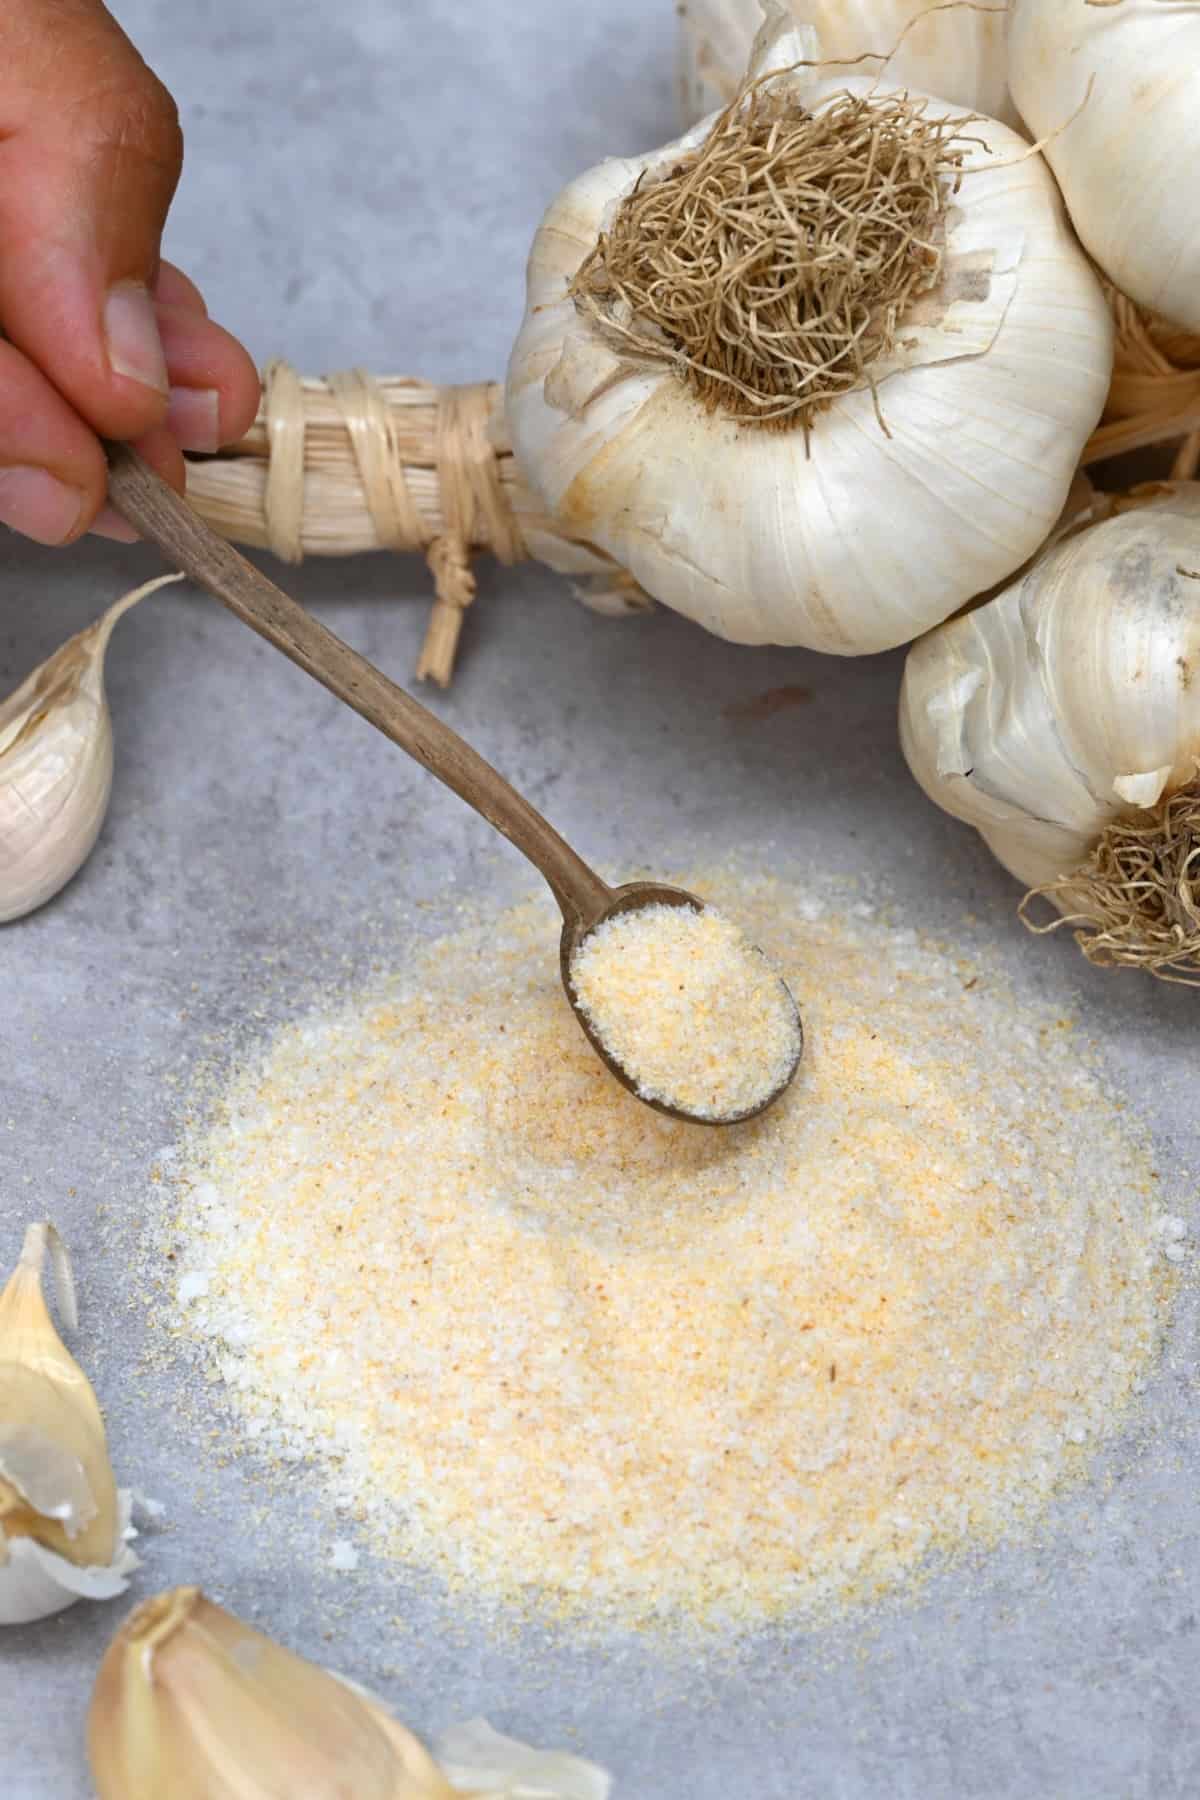 A spoonful of homemade garlic salt